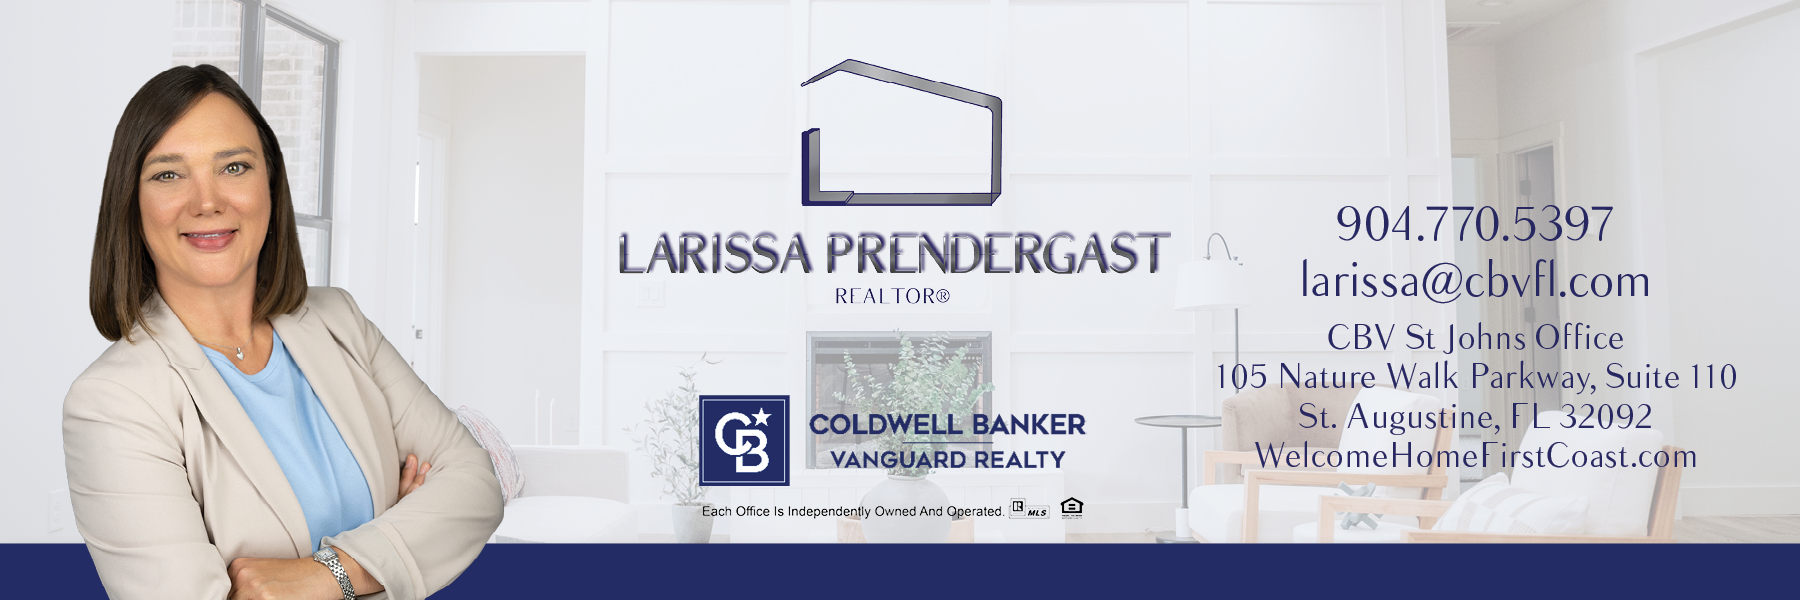 Larissa-Prendergast-E-Signature.png